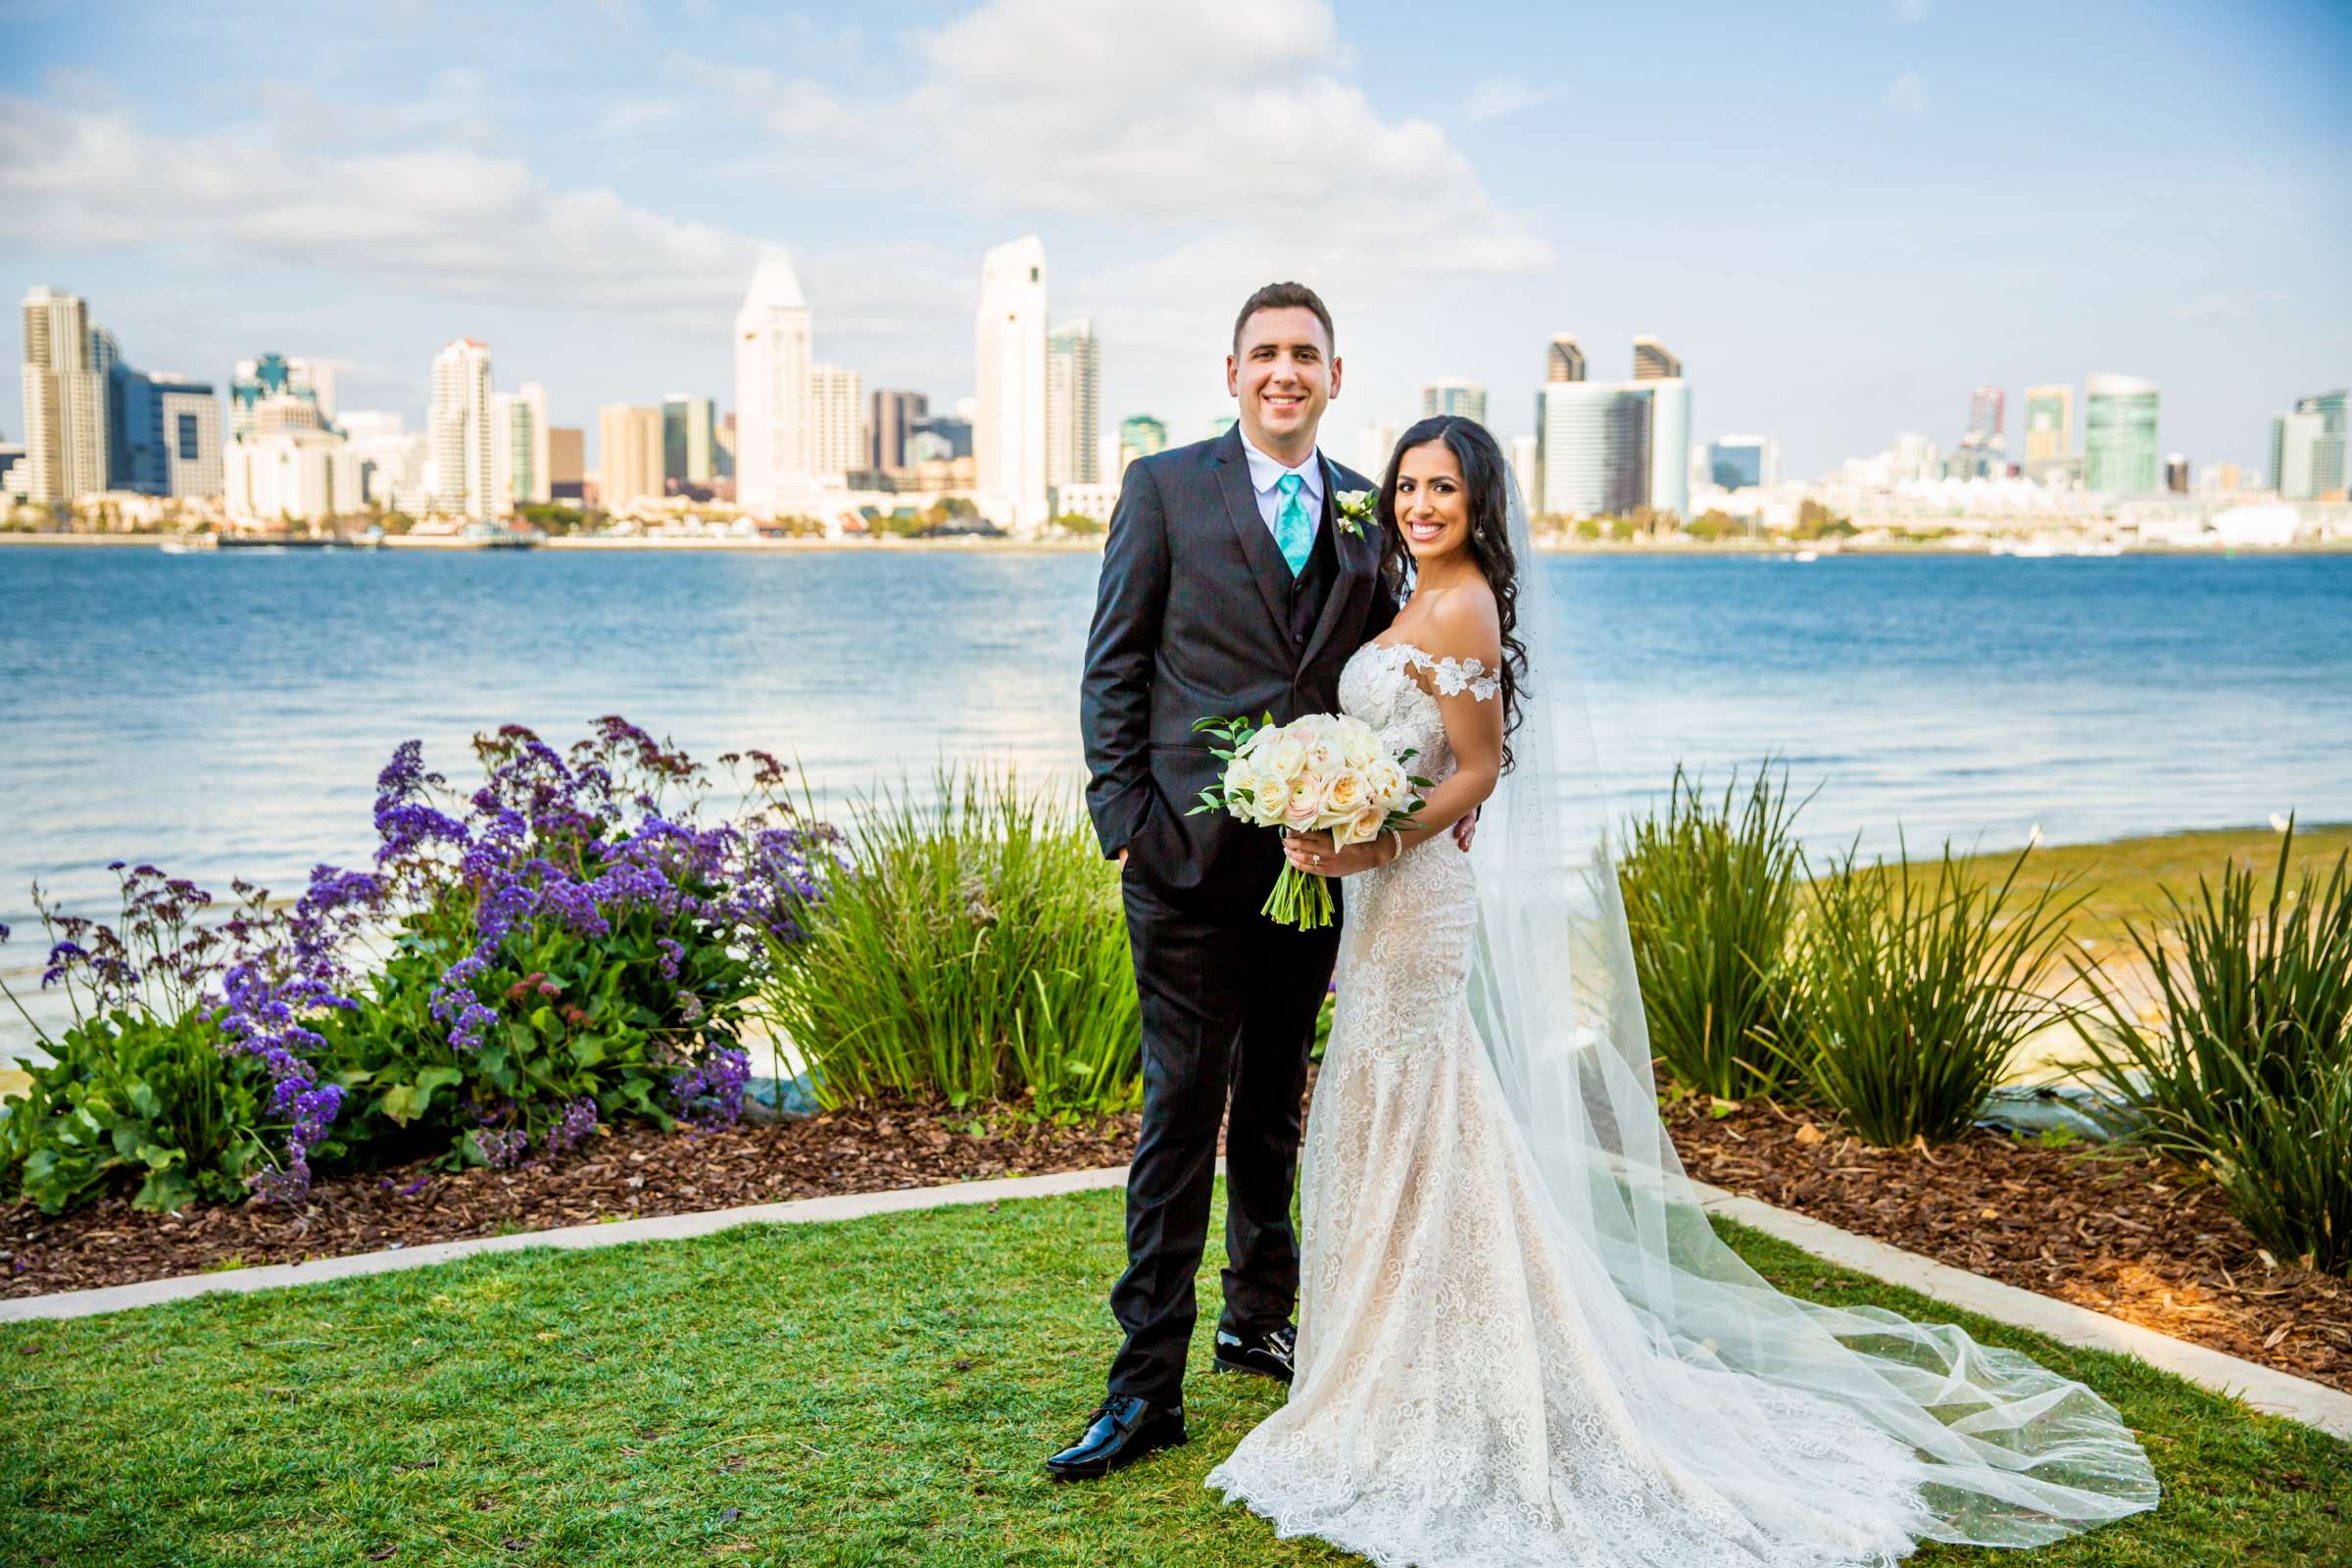 Hotel Del Coronado Wedding, Sarah and Kyle Wedding Photo #10 by True Photography